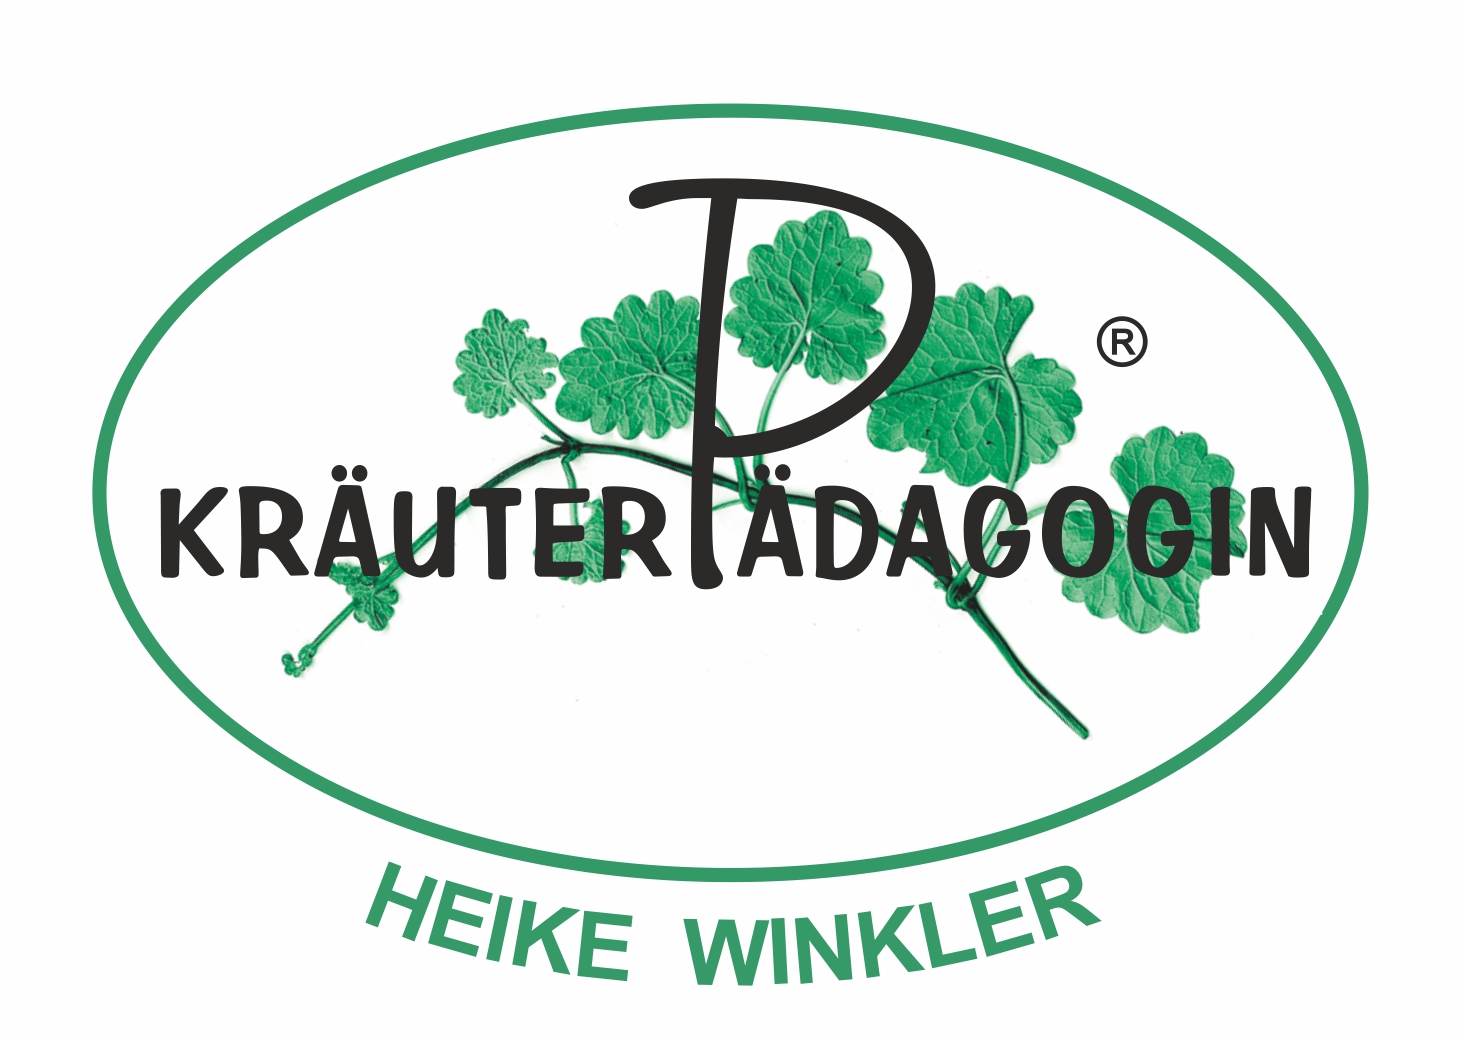 Logo_Krauterpaedagogin_H_Winkler.JPG, 29kB